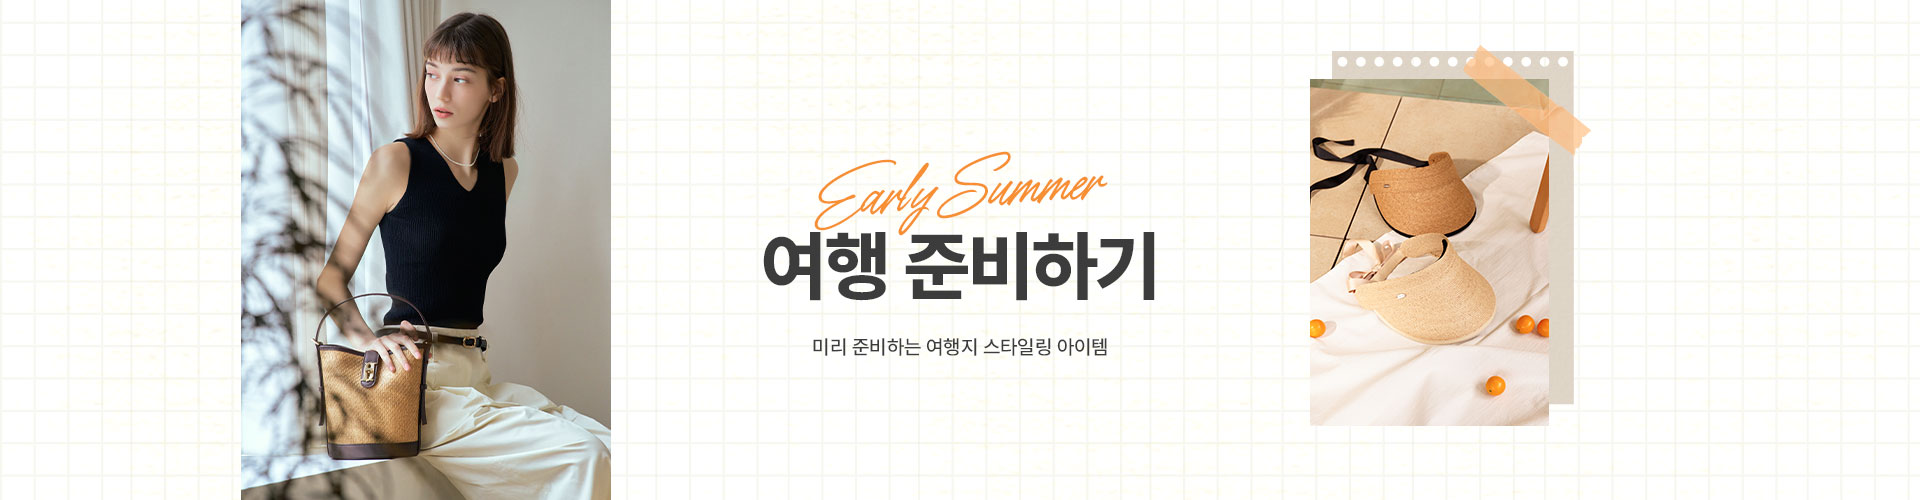 [핸드백/기획전] Early Summer 예약 판매